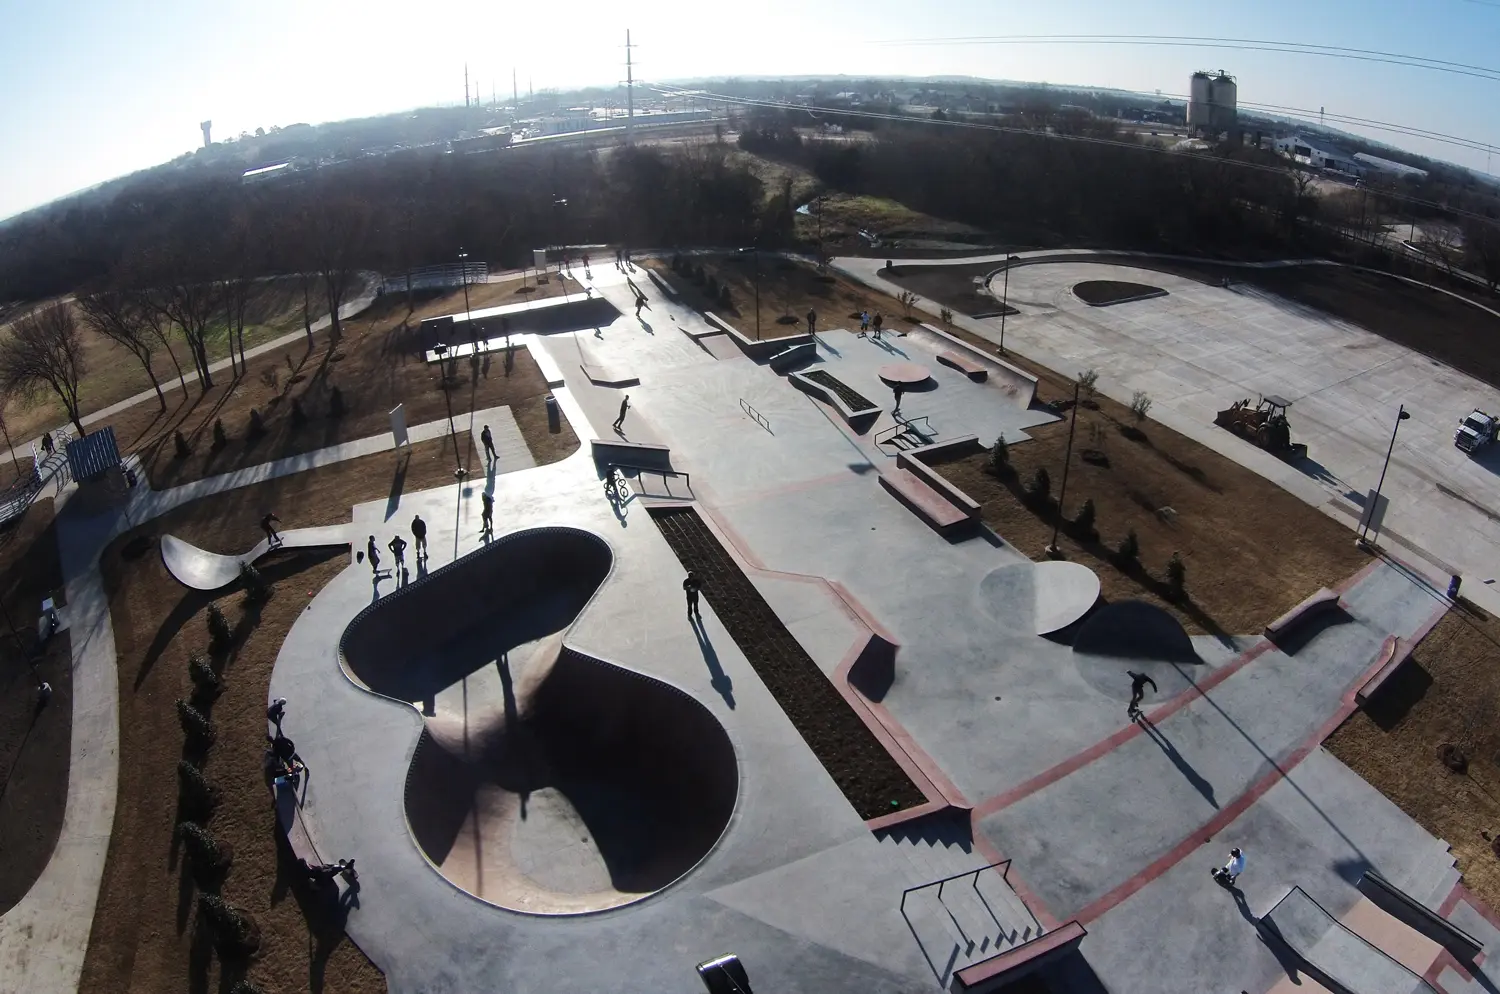 Roanoke Texas Skate Park